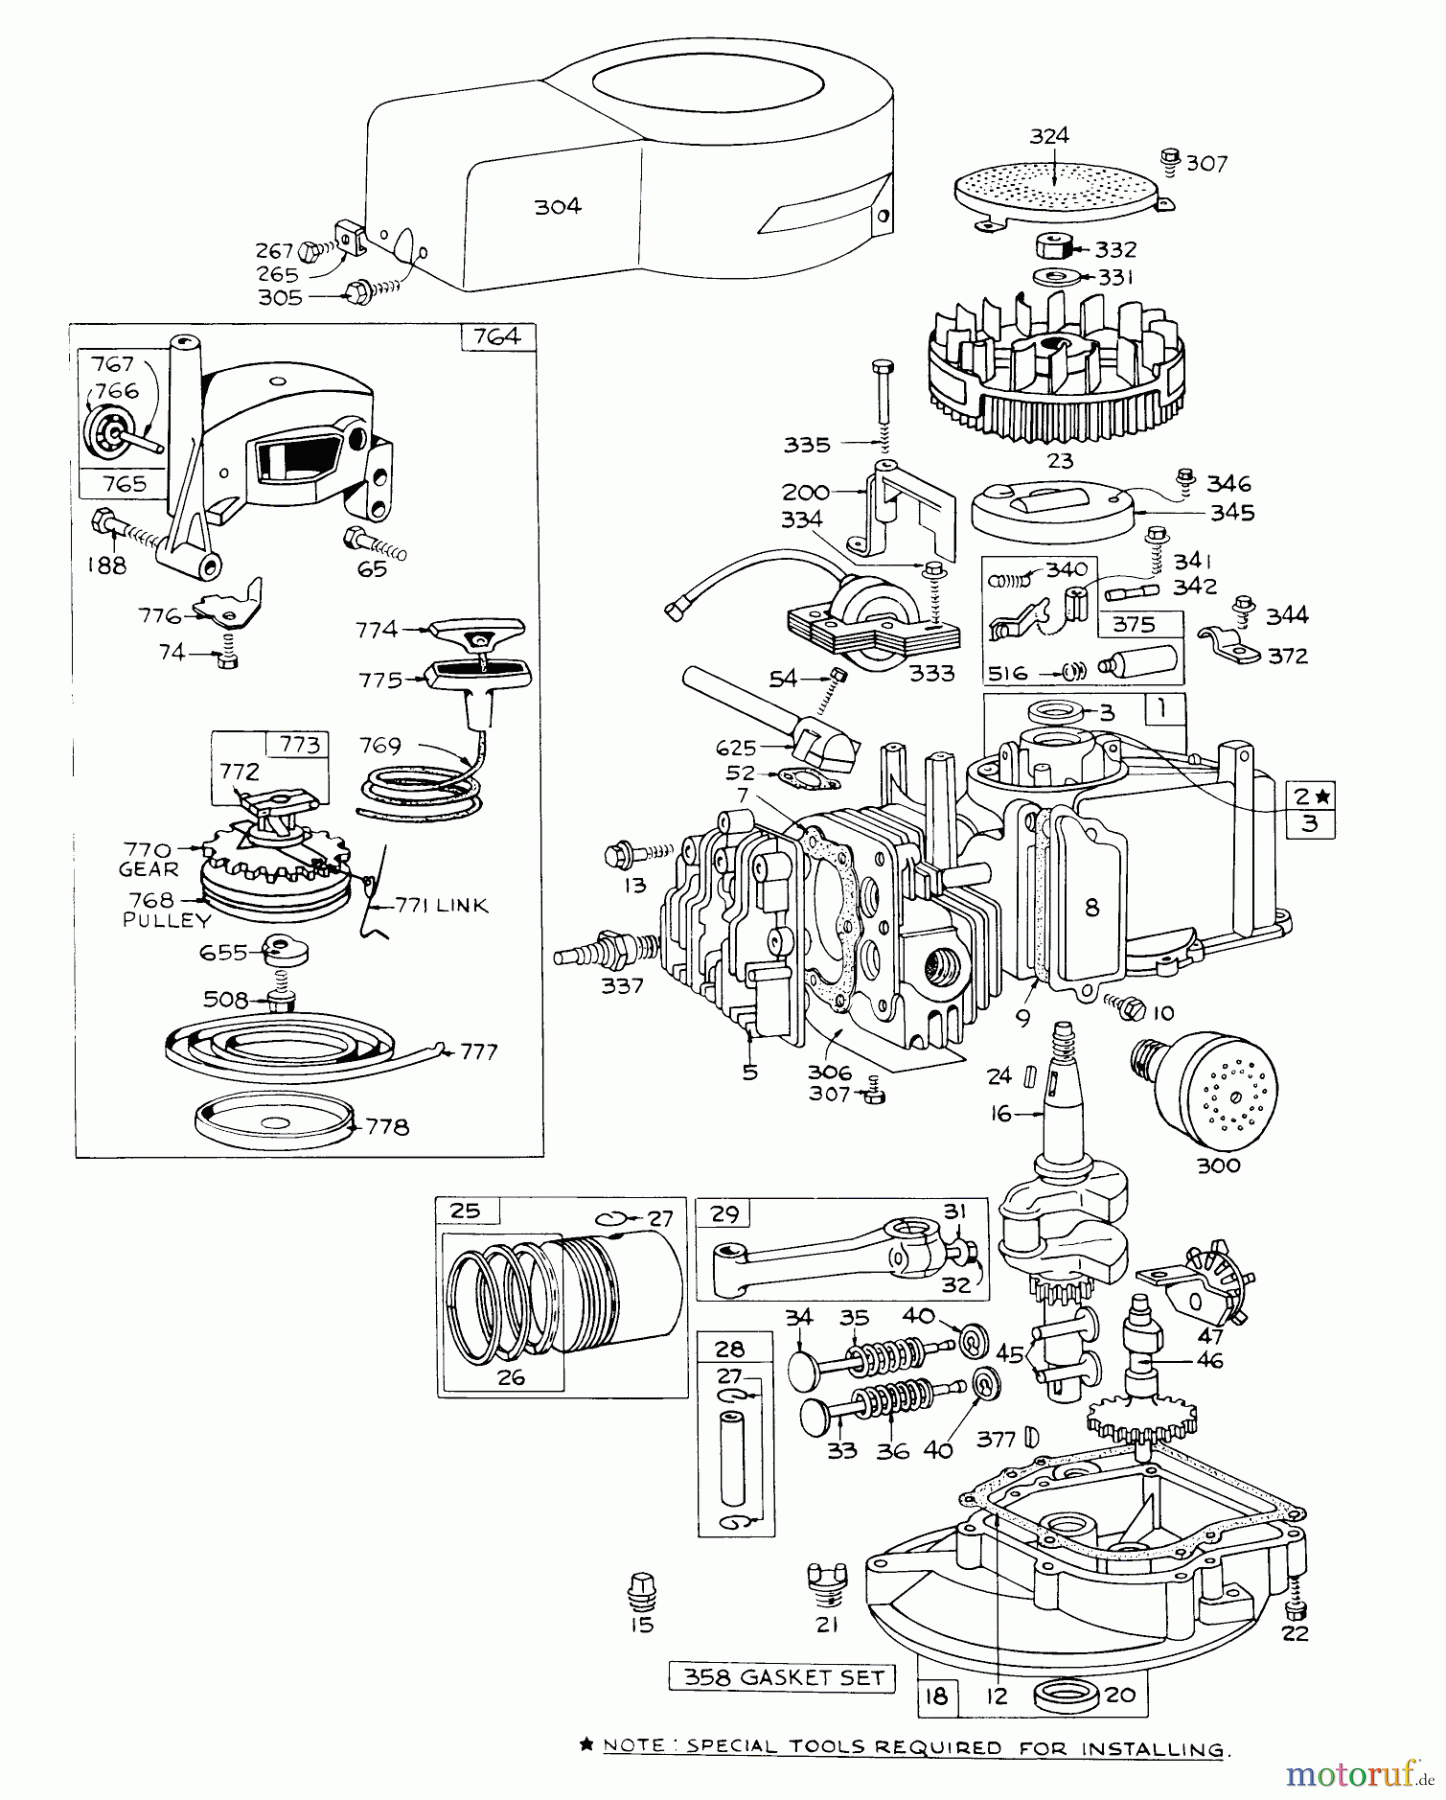  Toro Neu Mowers, Walk-Behind Seite 1 16000 - Toro Fiesta Lawnmower, 1971 (1000001-1999999) ENGINE MODEL NO. 92508-0818 FOR 19